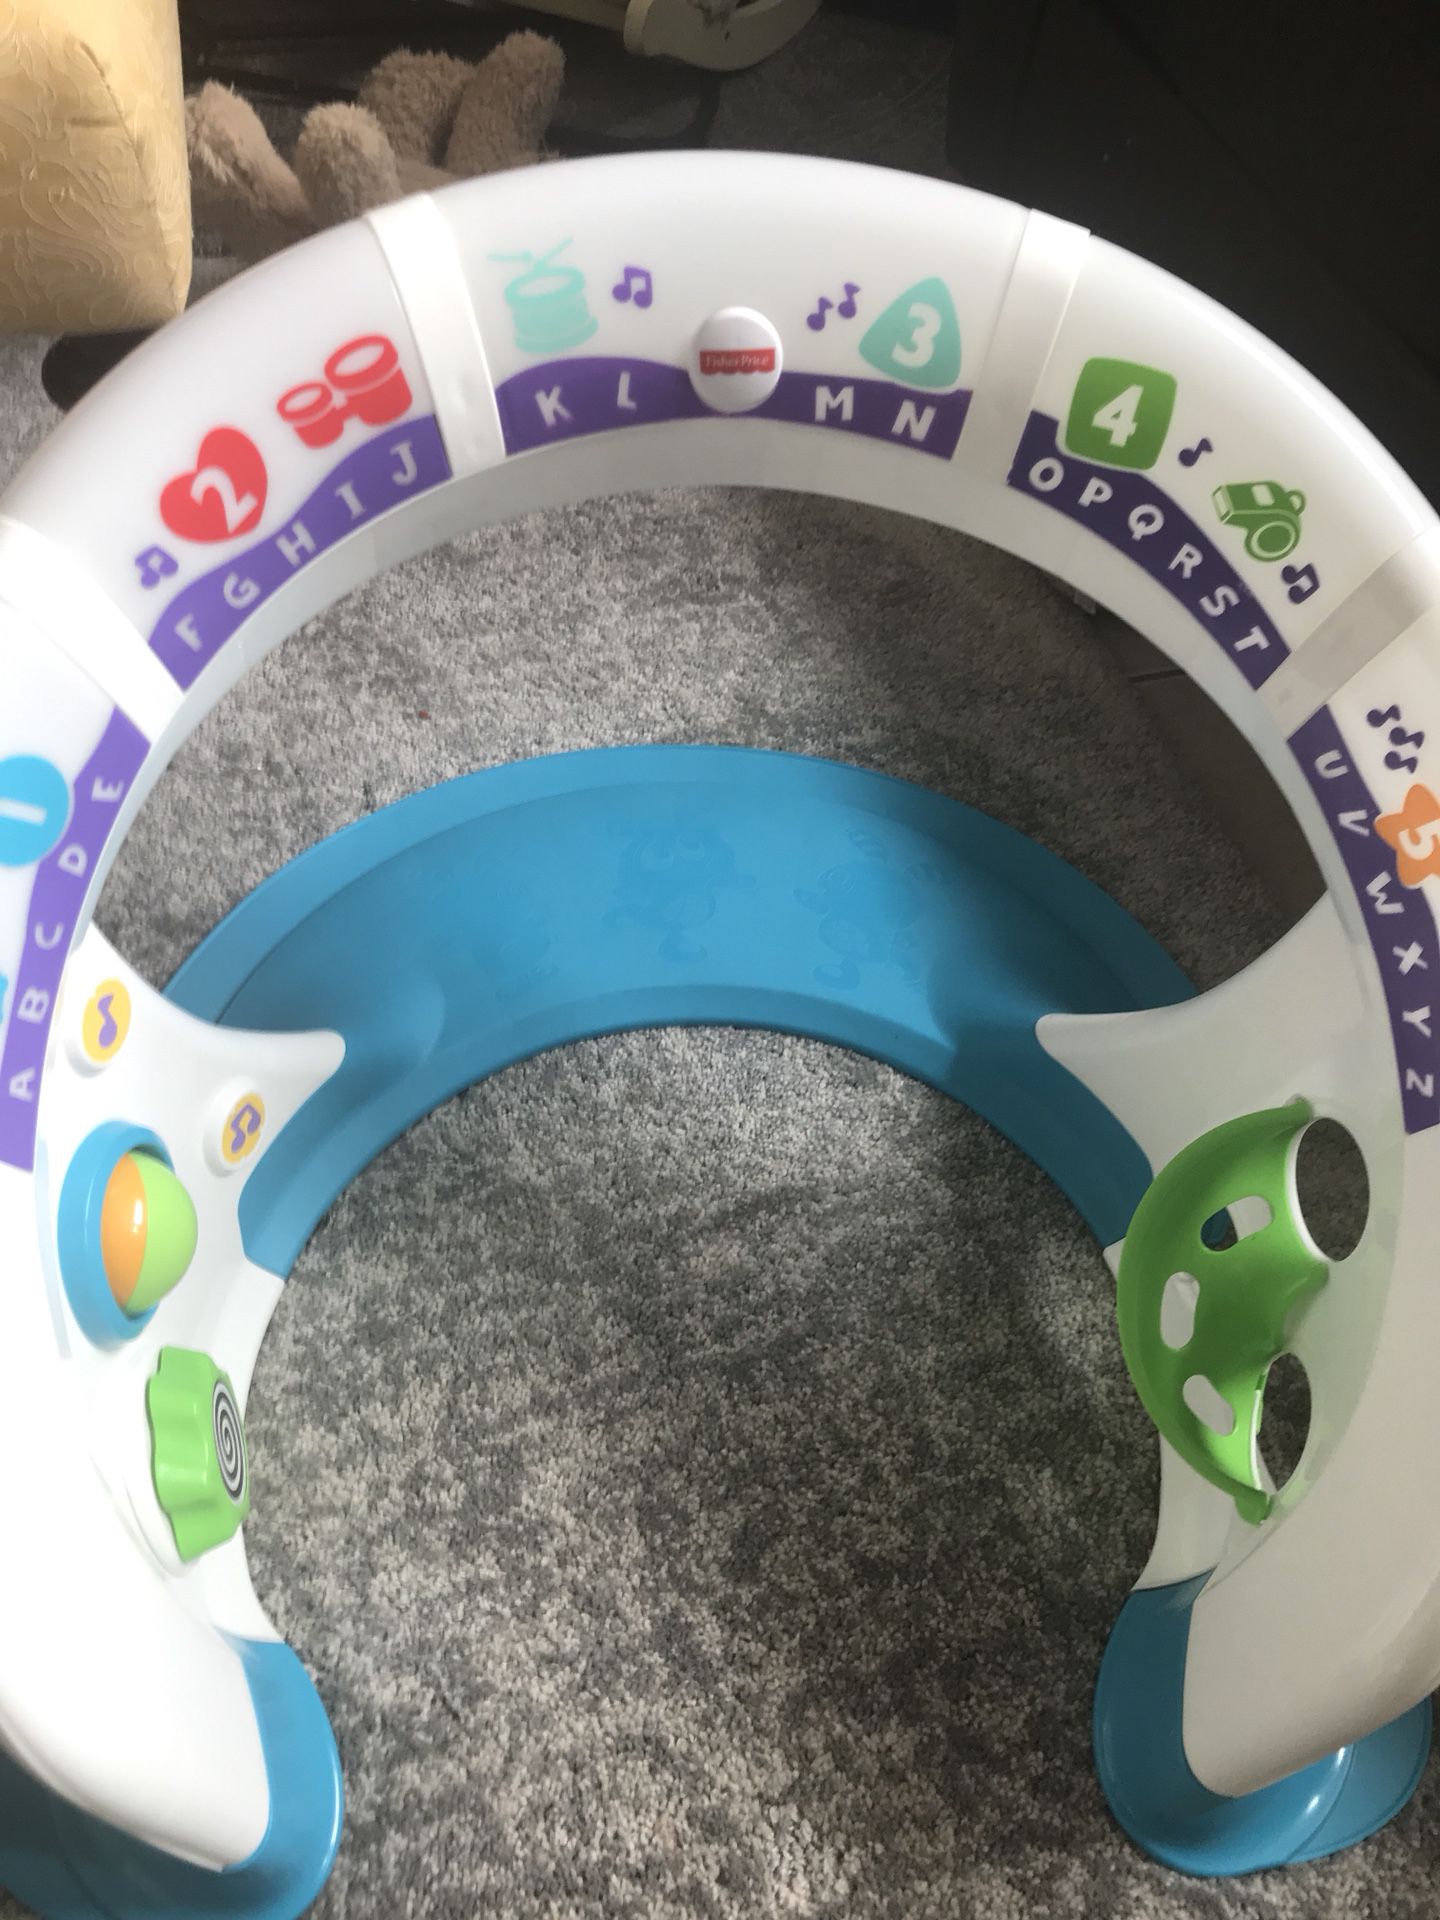 Fischer Price baby/toddler activity toy